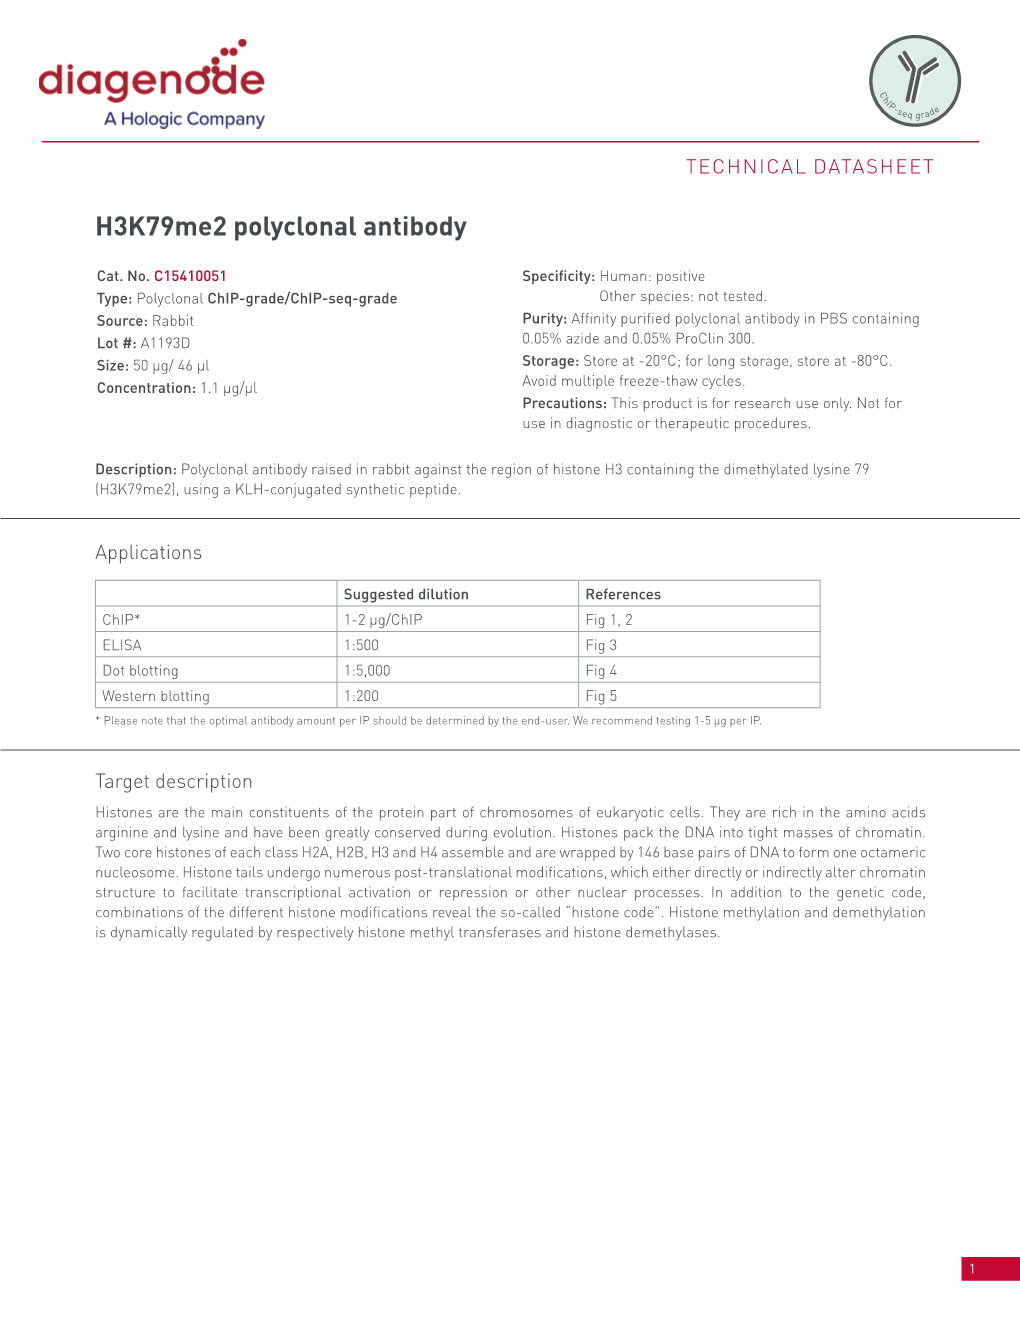 H3k79me2 Polyclonal Antibody